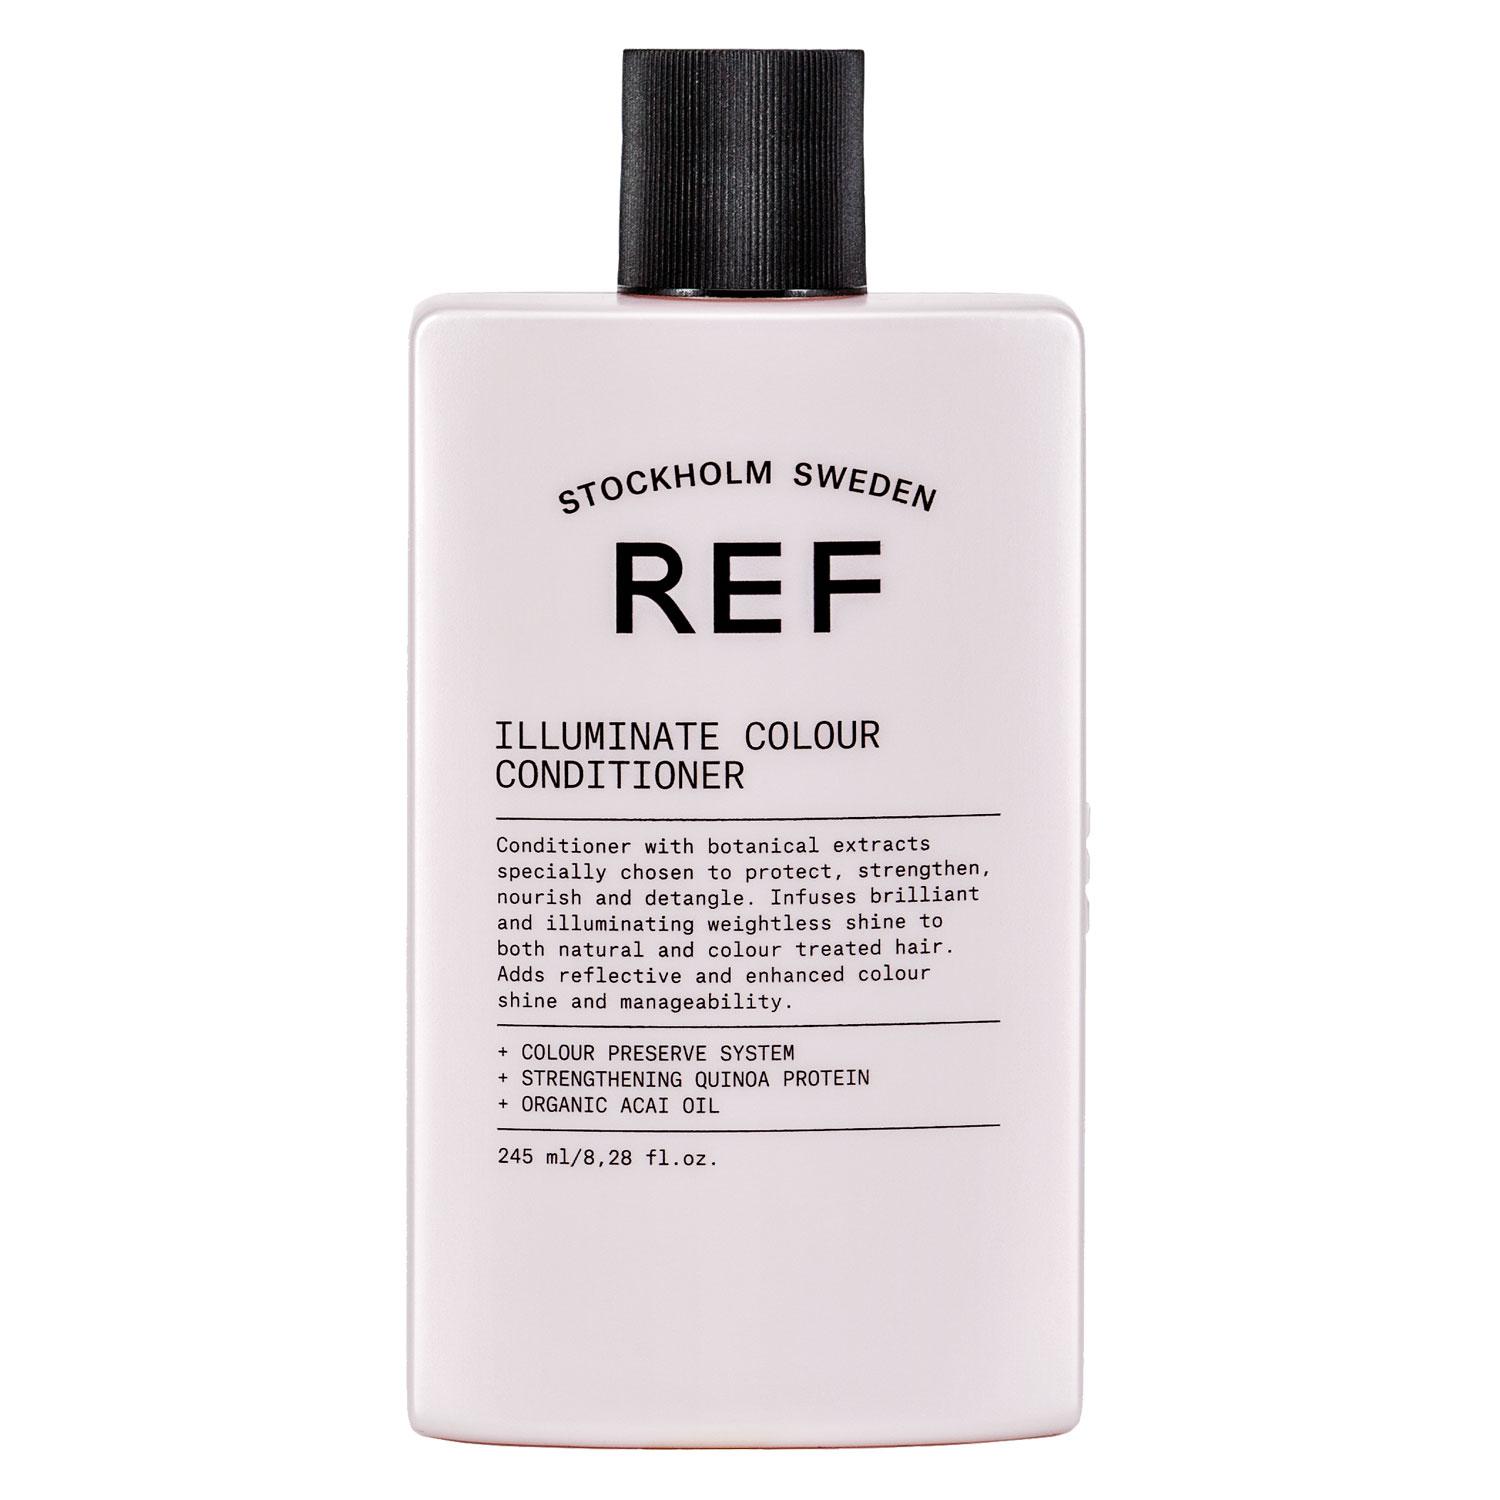 REF Treatment - Illuminate Colour Conditioner